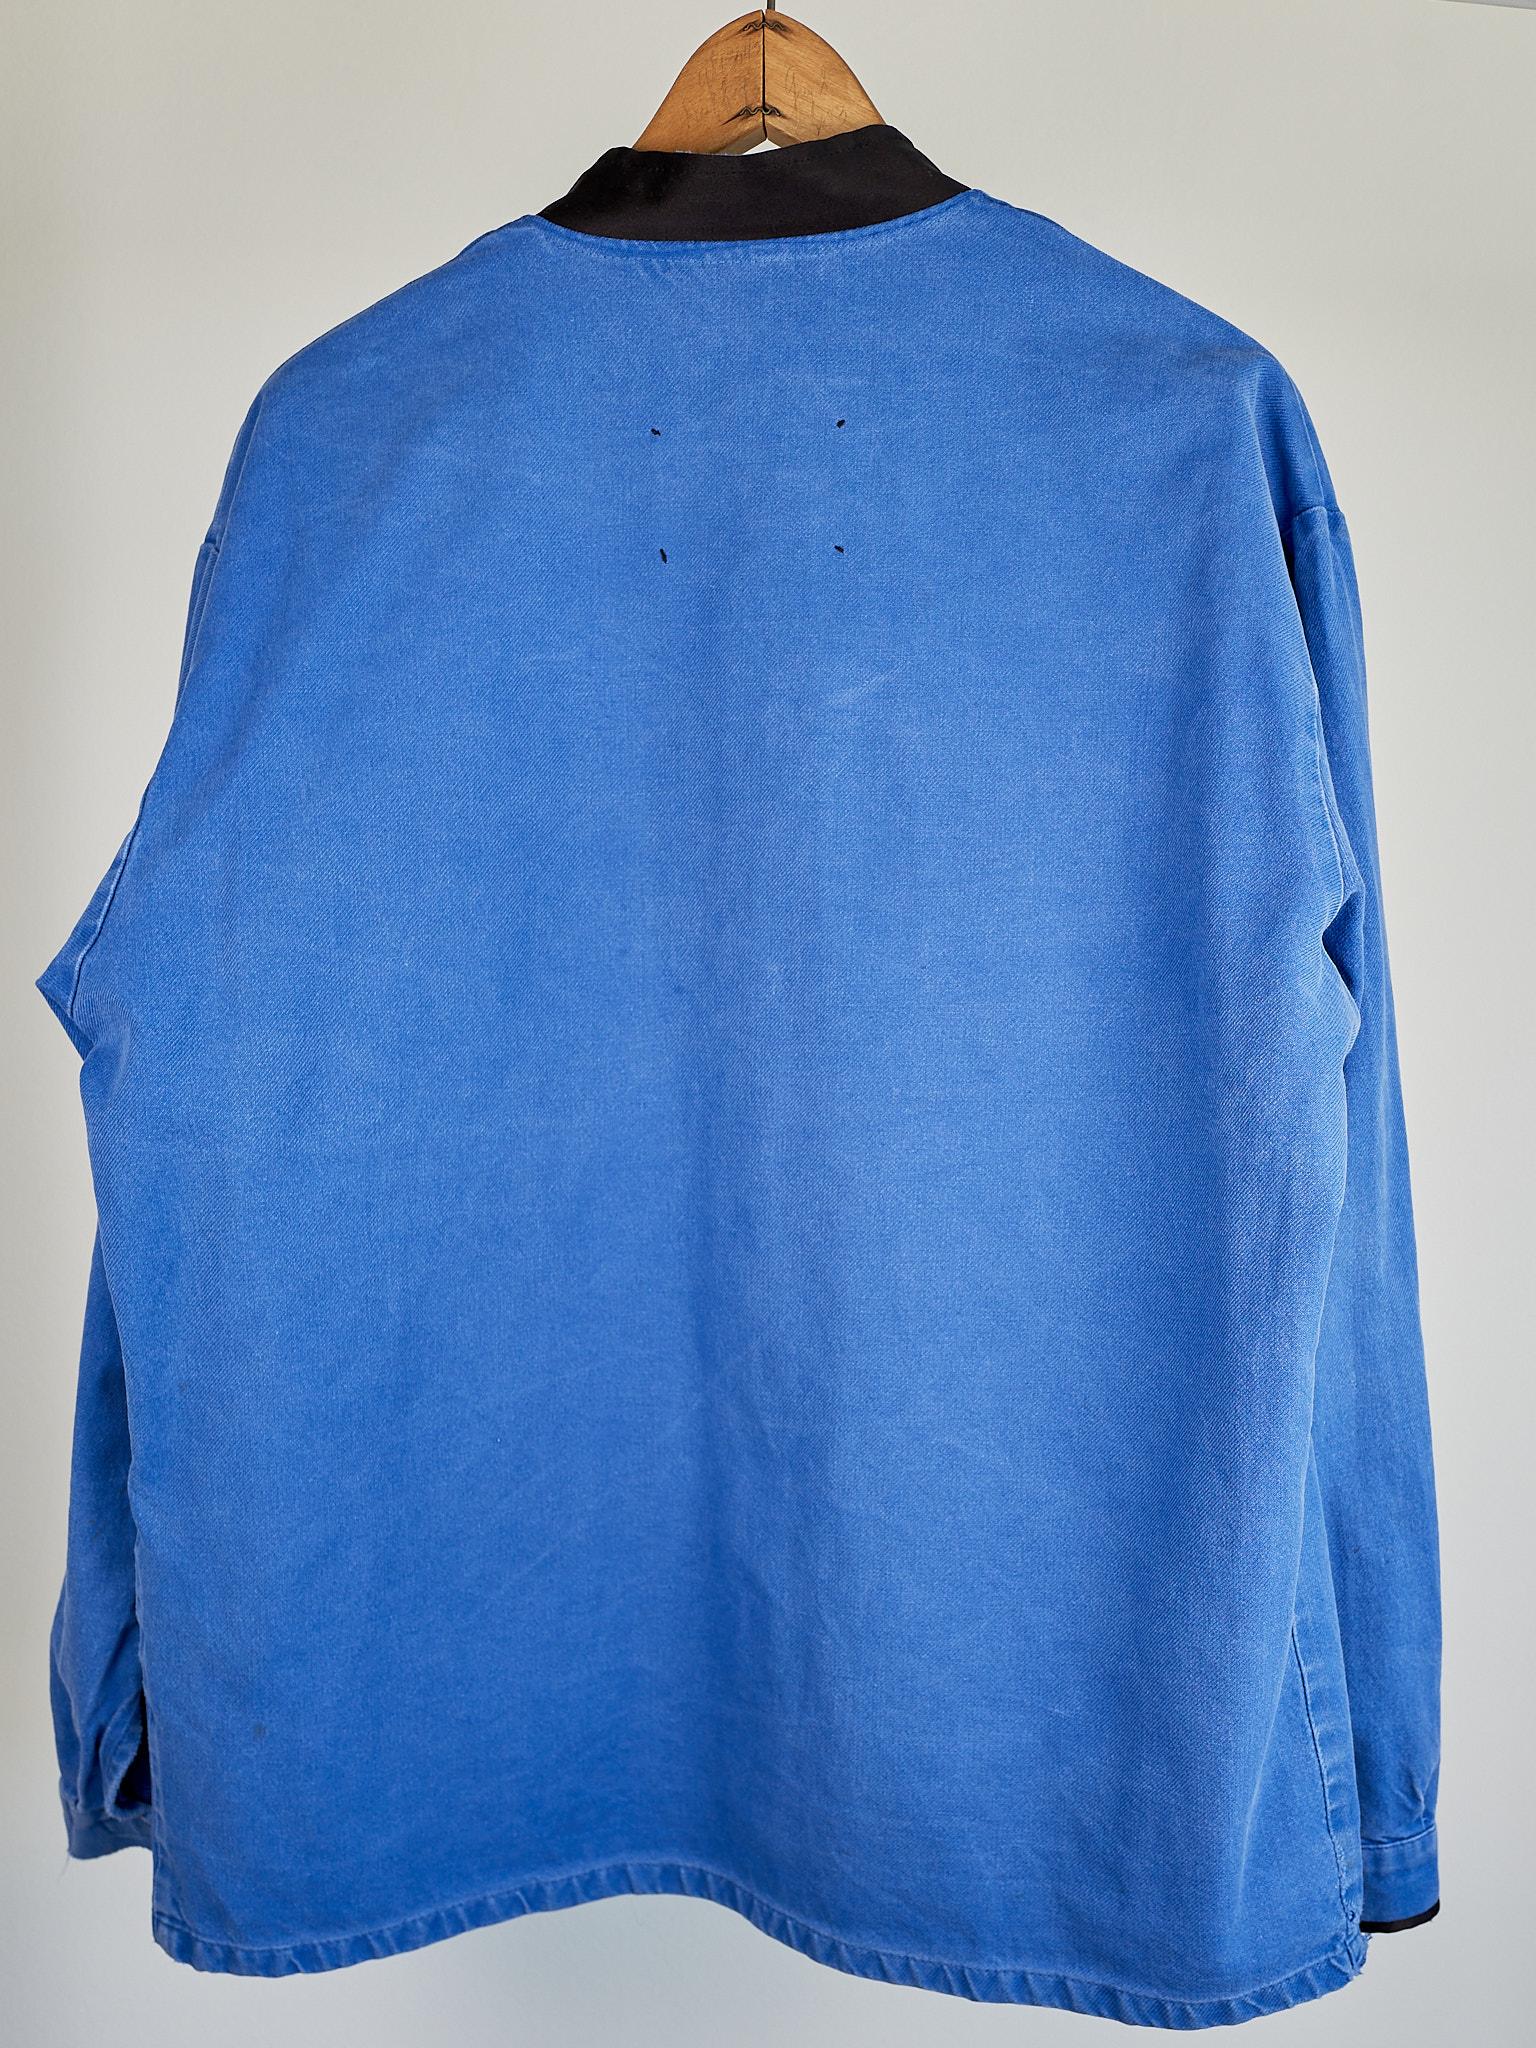  Wool Fringes Embellished Pockets Blue Cobalt Cotton French Work Wear J Dauphin 6